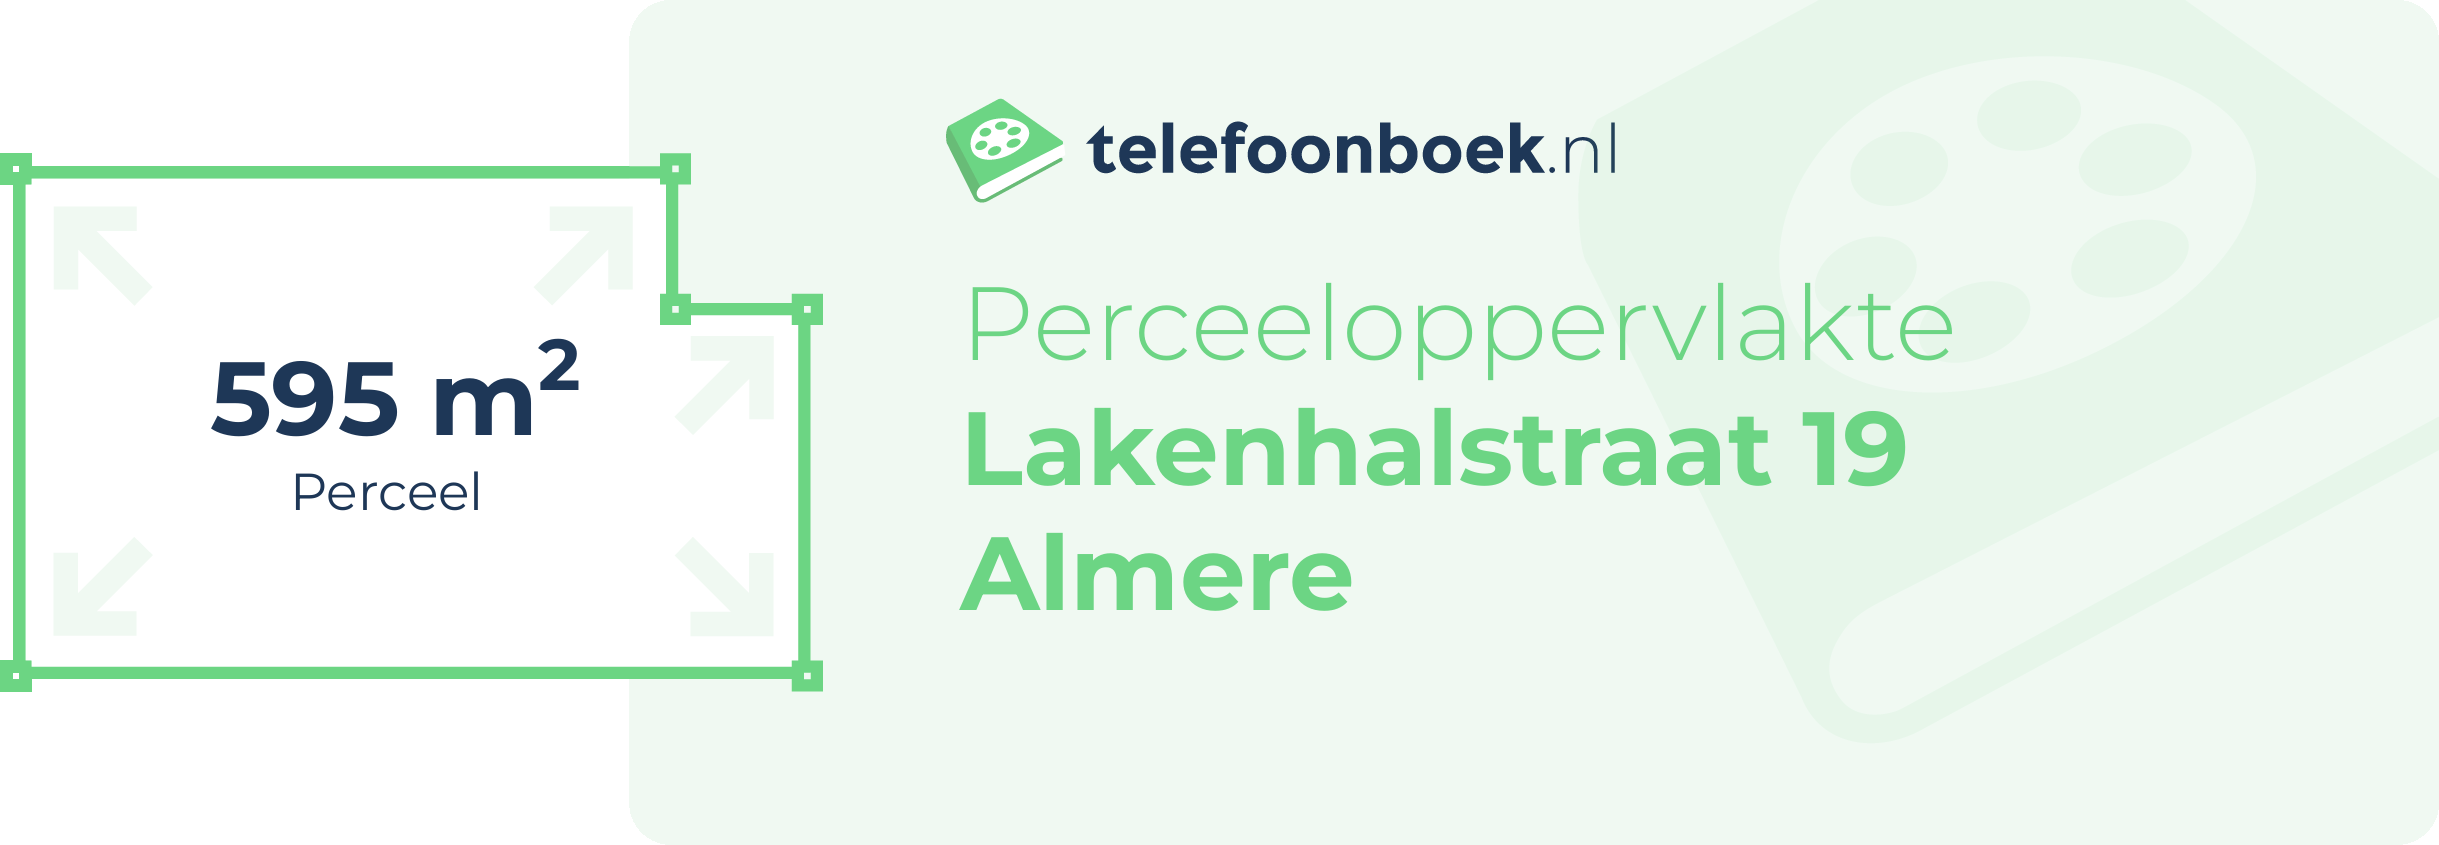 Perceeloppervlakte Lakenhalstraat 19 Almere